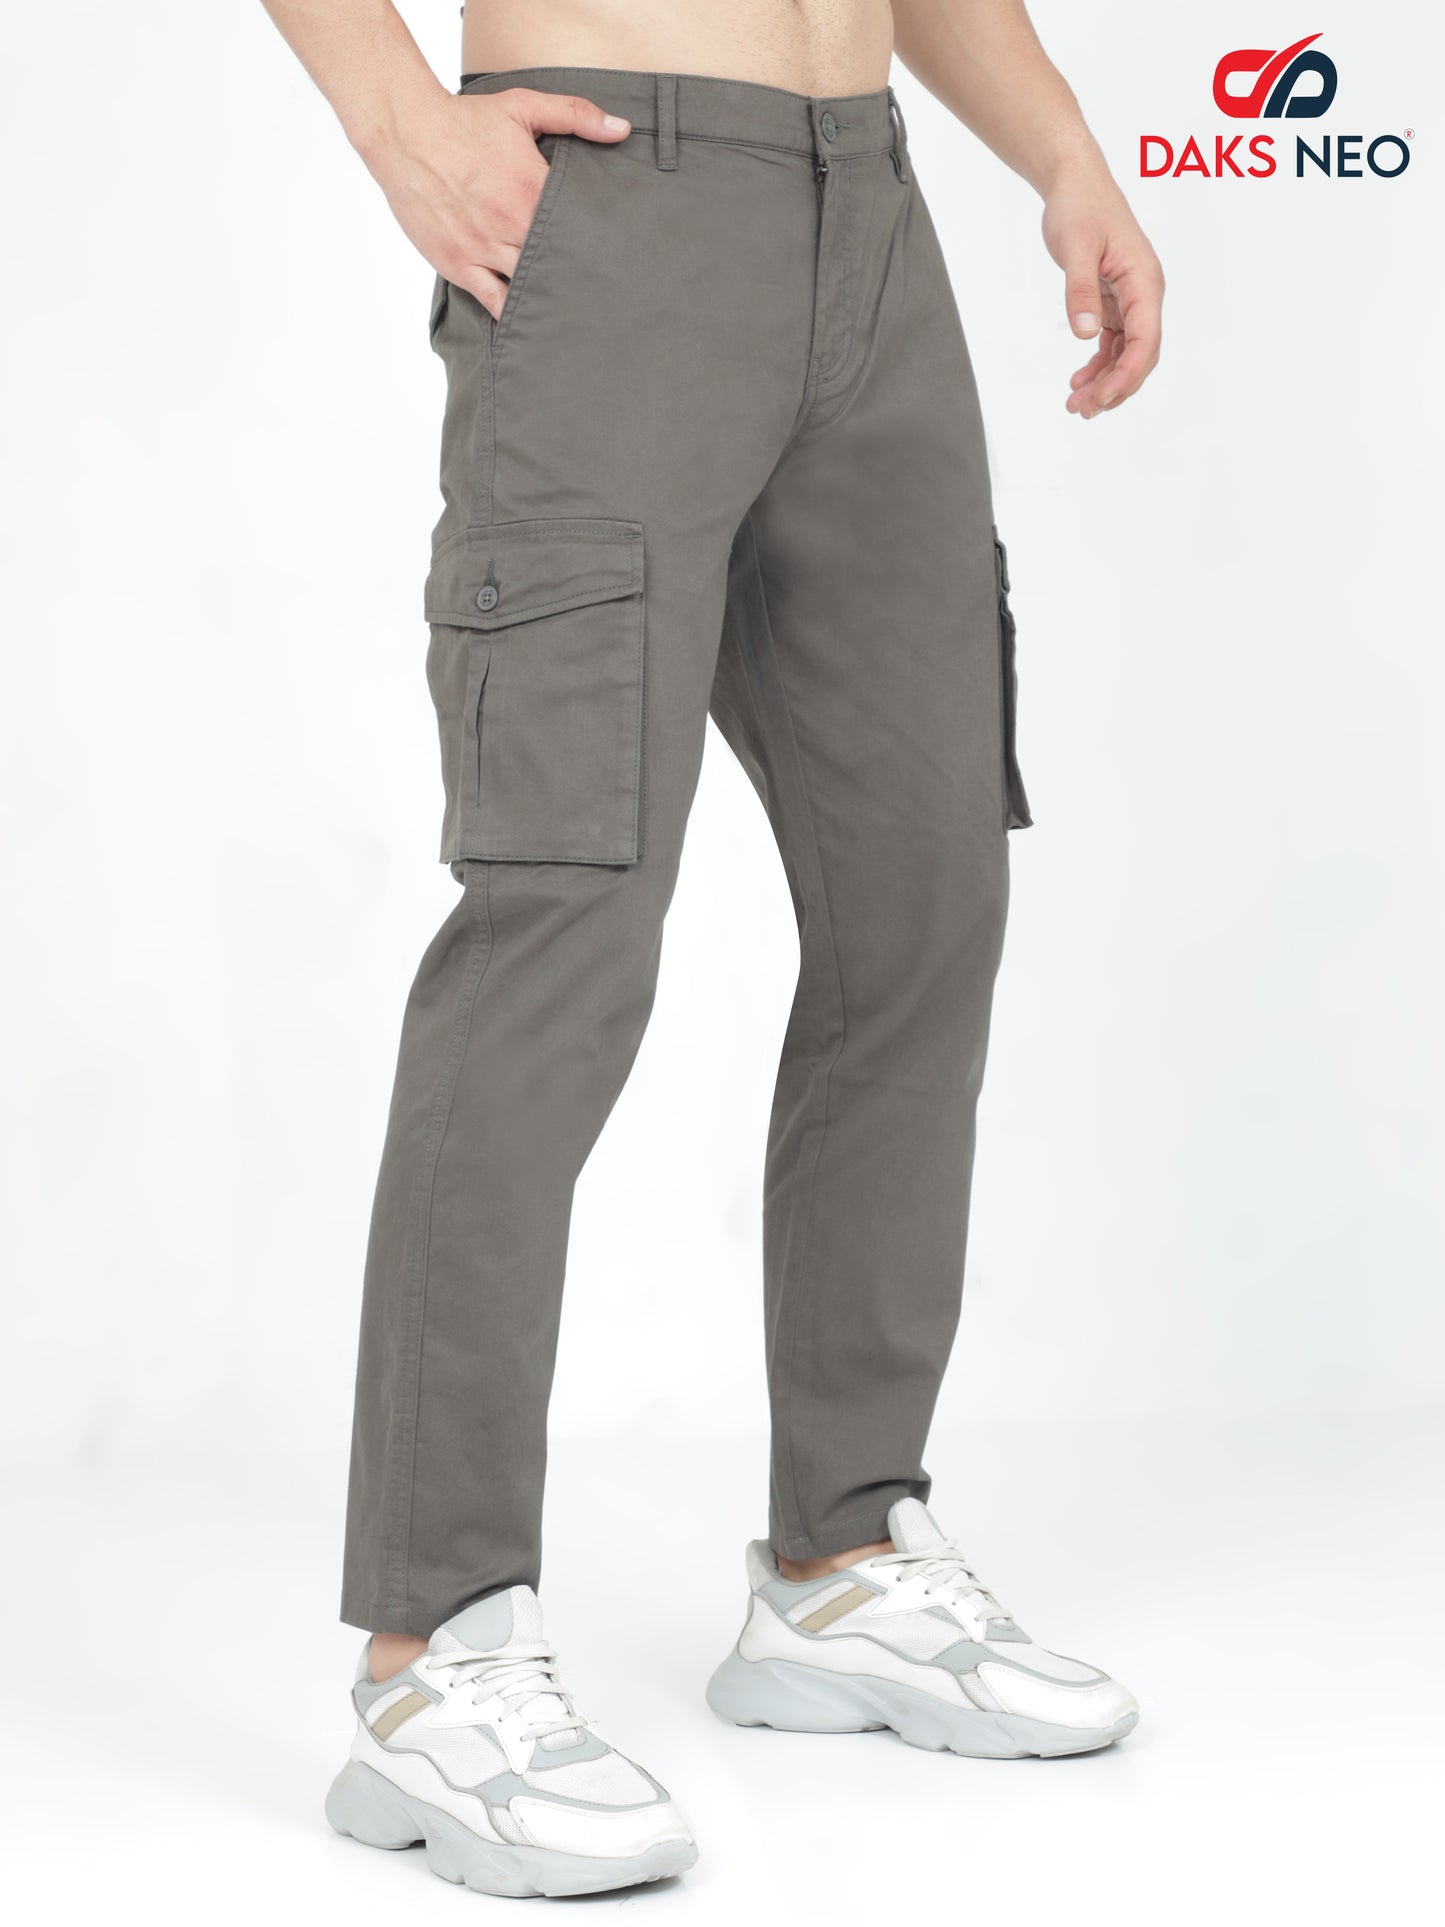 Grey Cargo Pants For Men